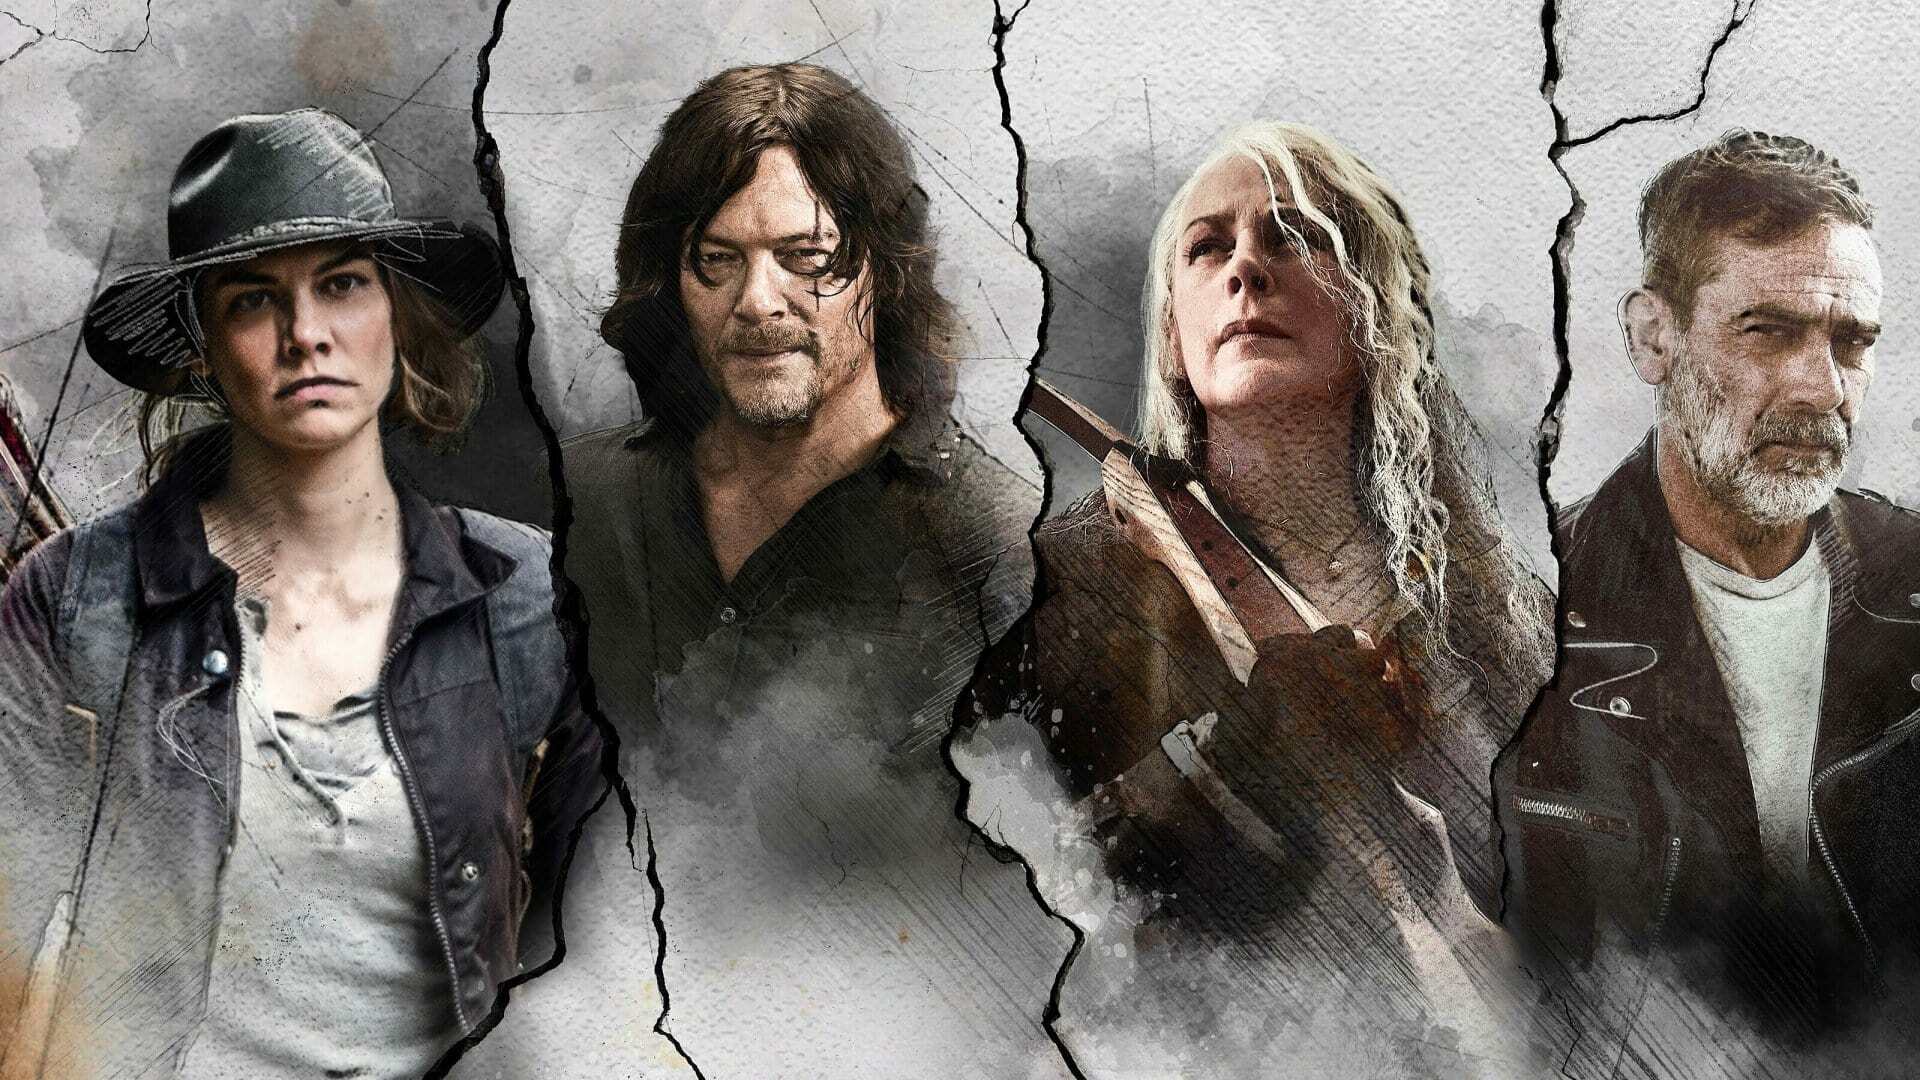 The Walking Dead: Origins / Ходячие мертвецы: Истоки